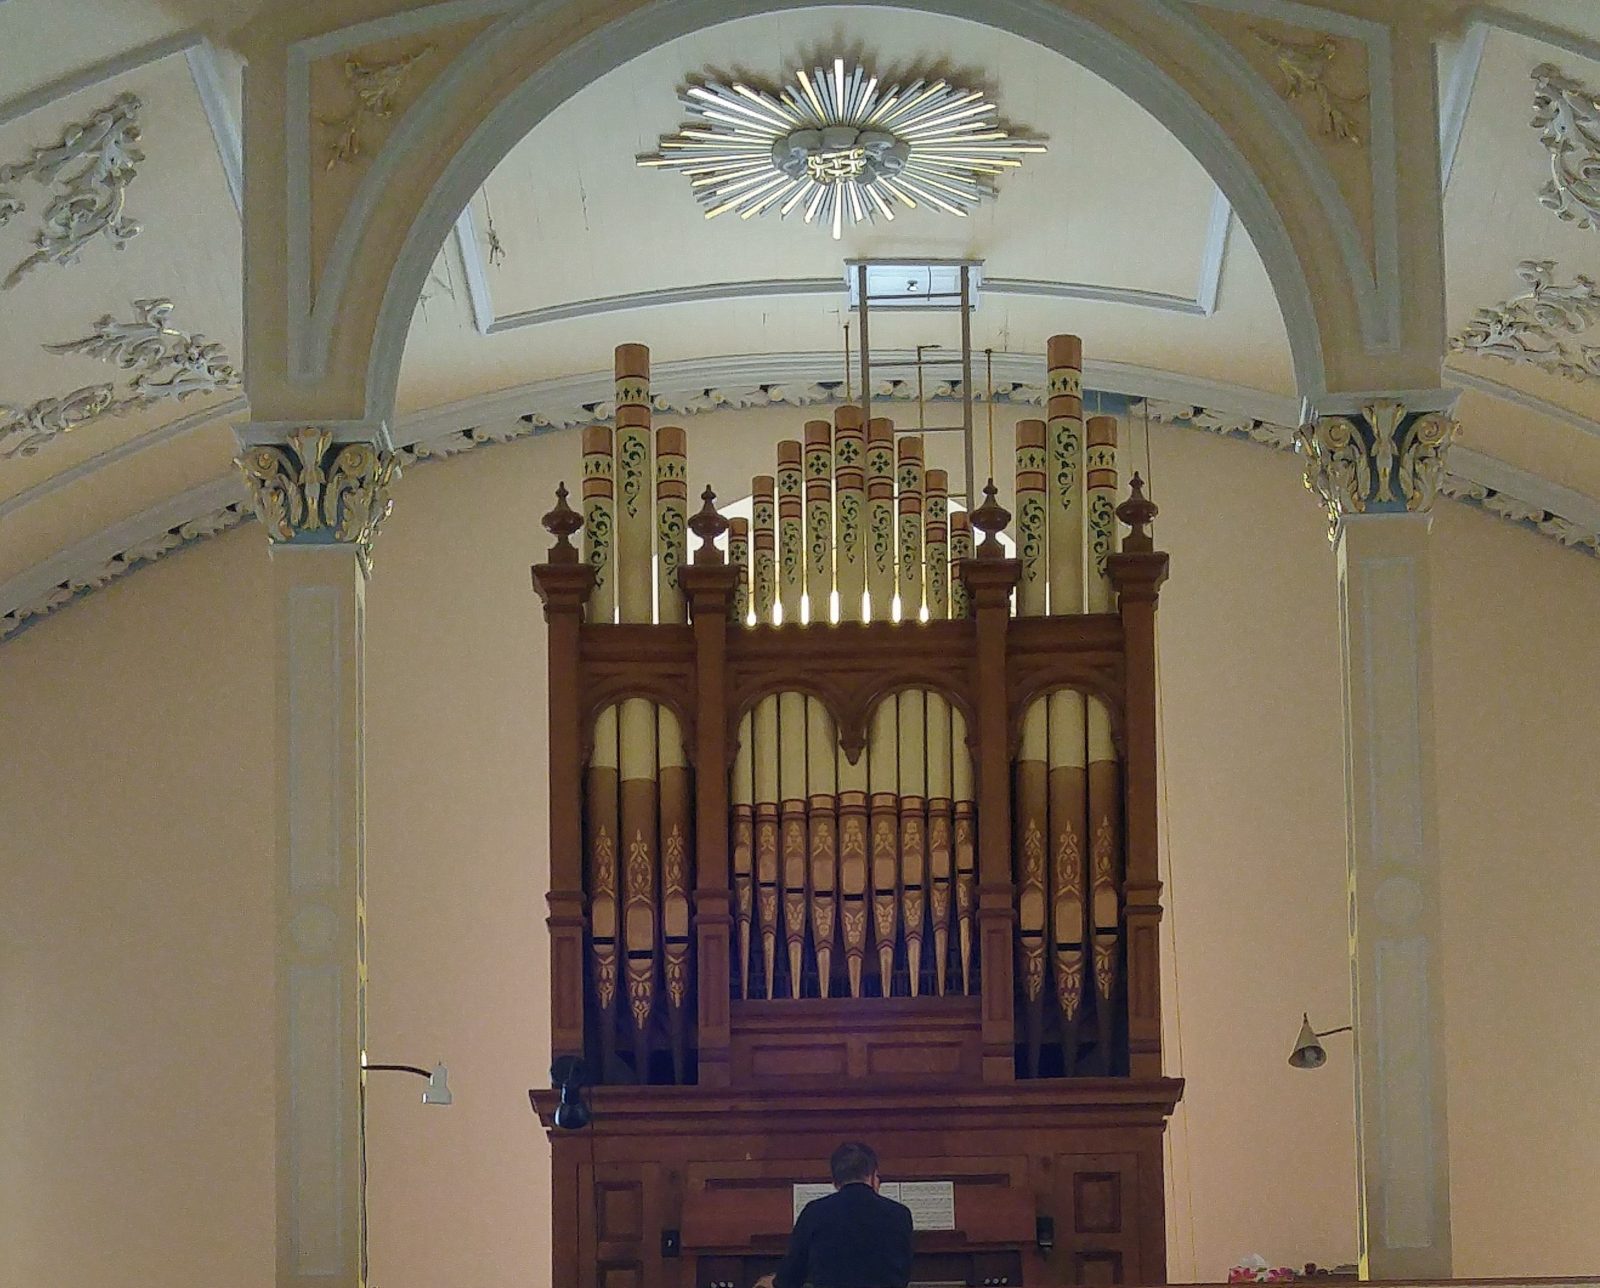 Durham-Sud : projet d’acquisition d’un orgue de valeur historique